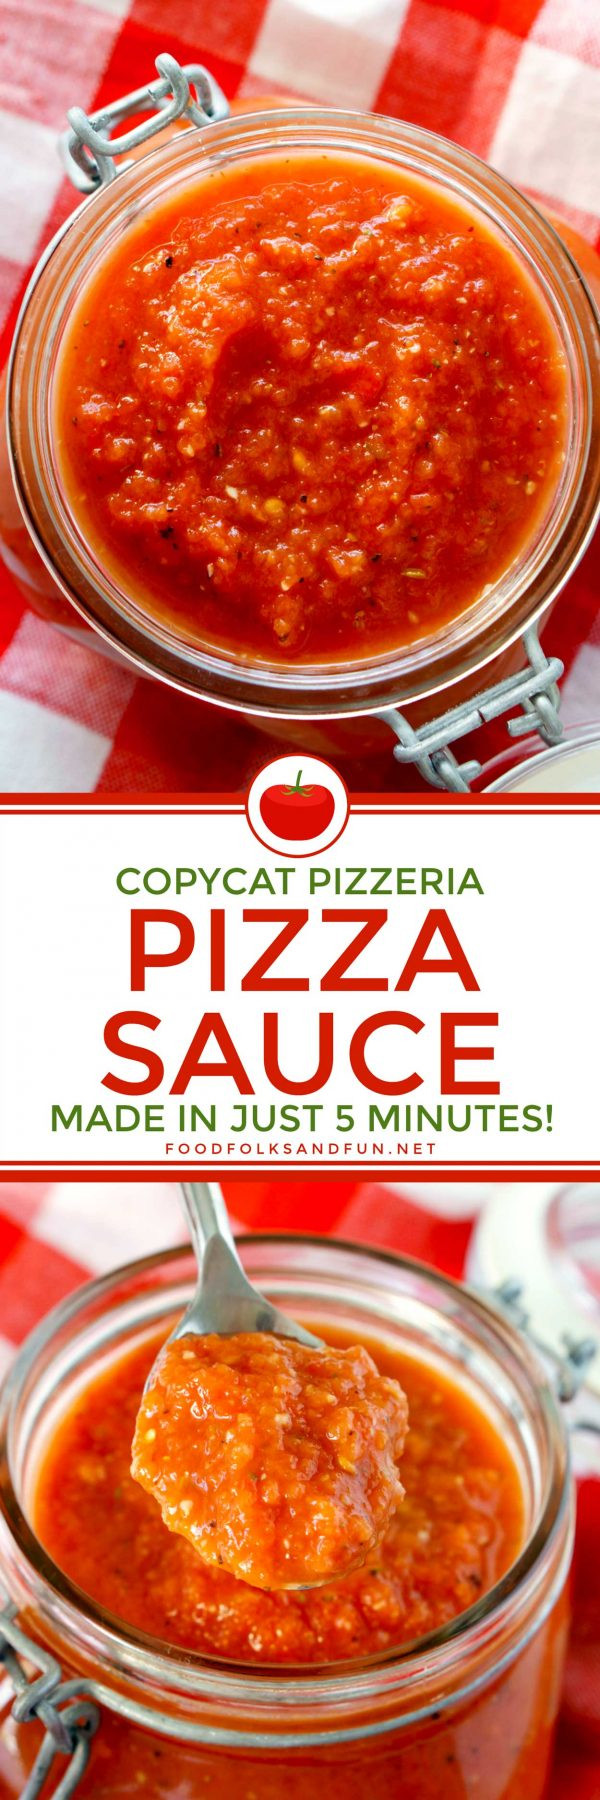 Pizza Sauce Recipe Easy
 Copycat Pizzeria Pizza Sauce Recipe • Food Folks and Fun